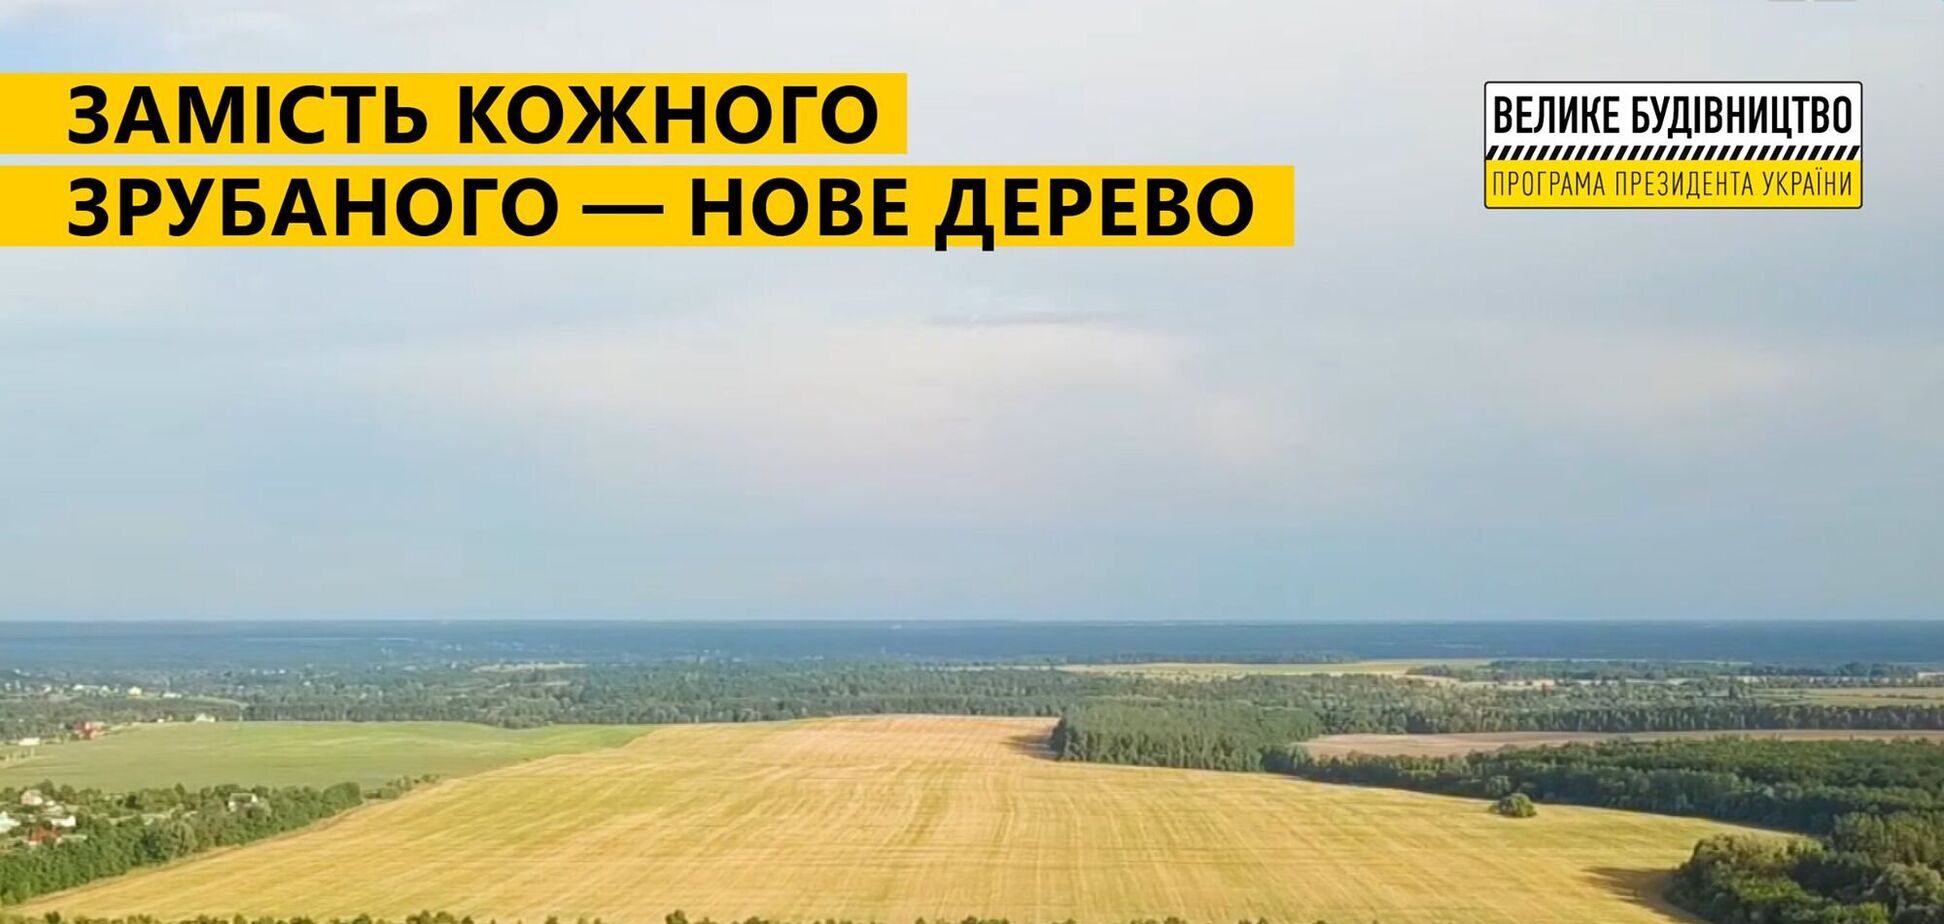 'Большая стройка' Киевской окружной дороги сохранит общий баланс зеленых насаждений – Укравтодор